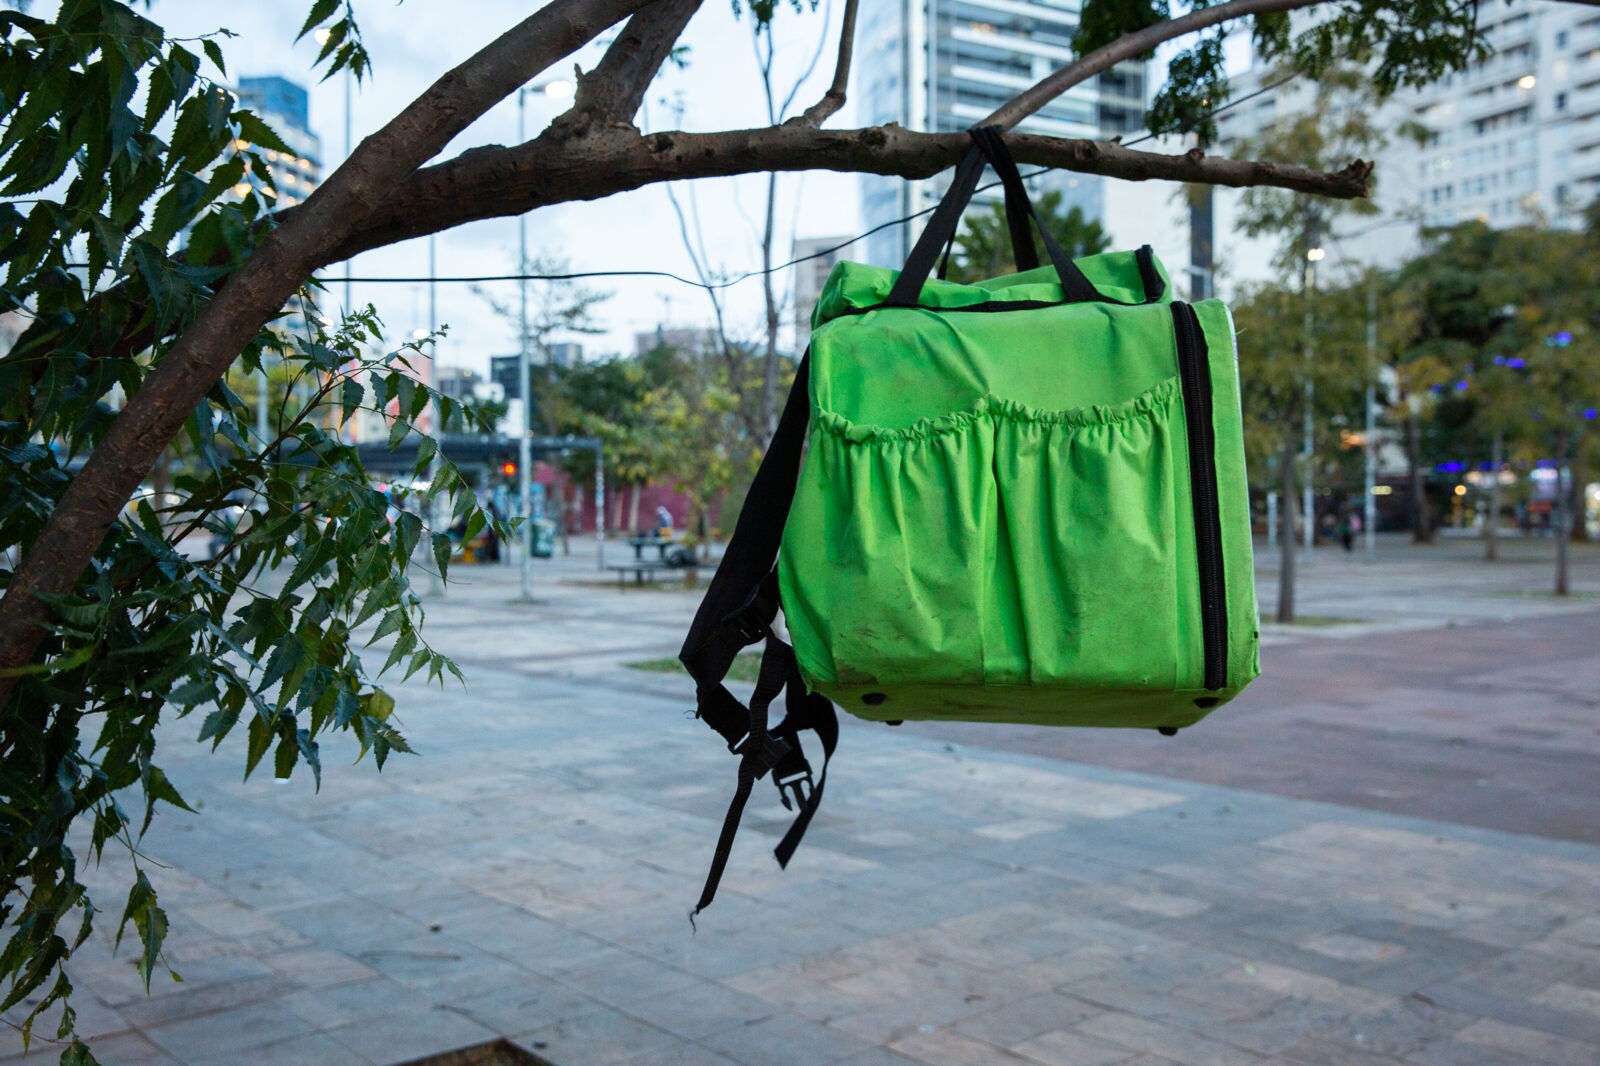 A imagem mostra uma mochila térmica verde limão com alças pretas pendurada em um galho de uma árvore, no meio de uma praça.